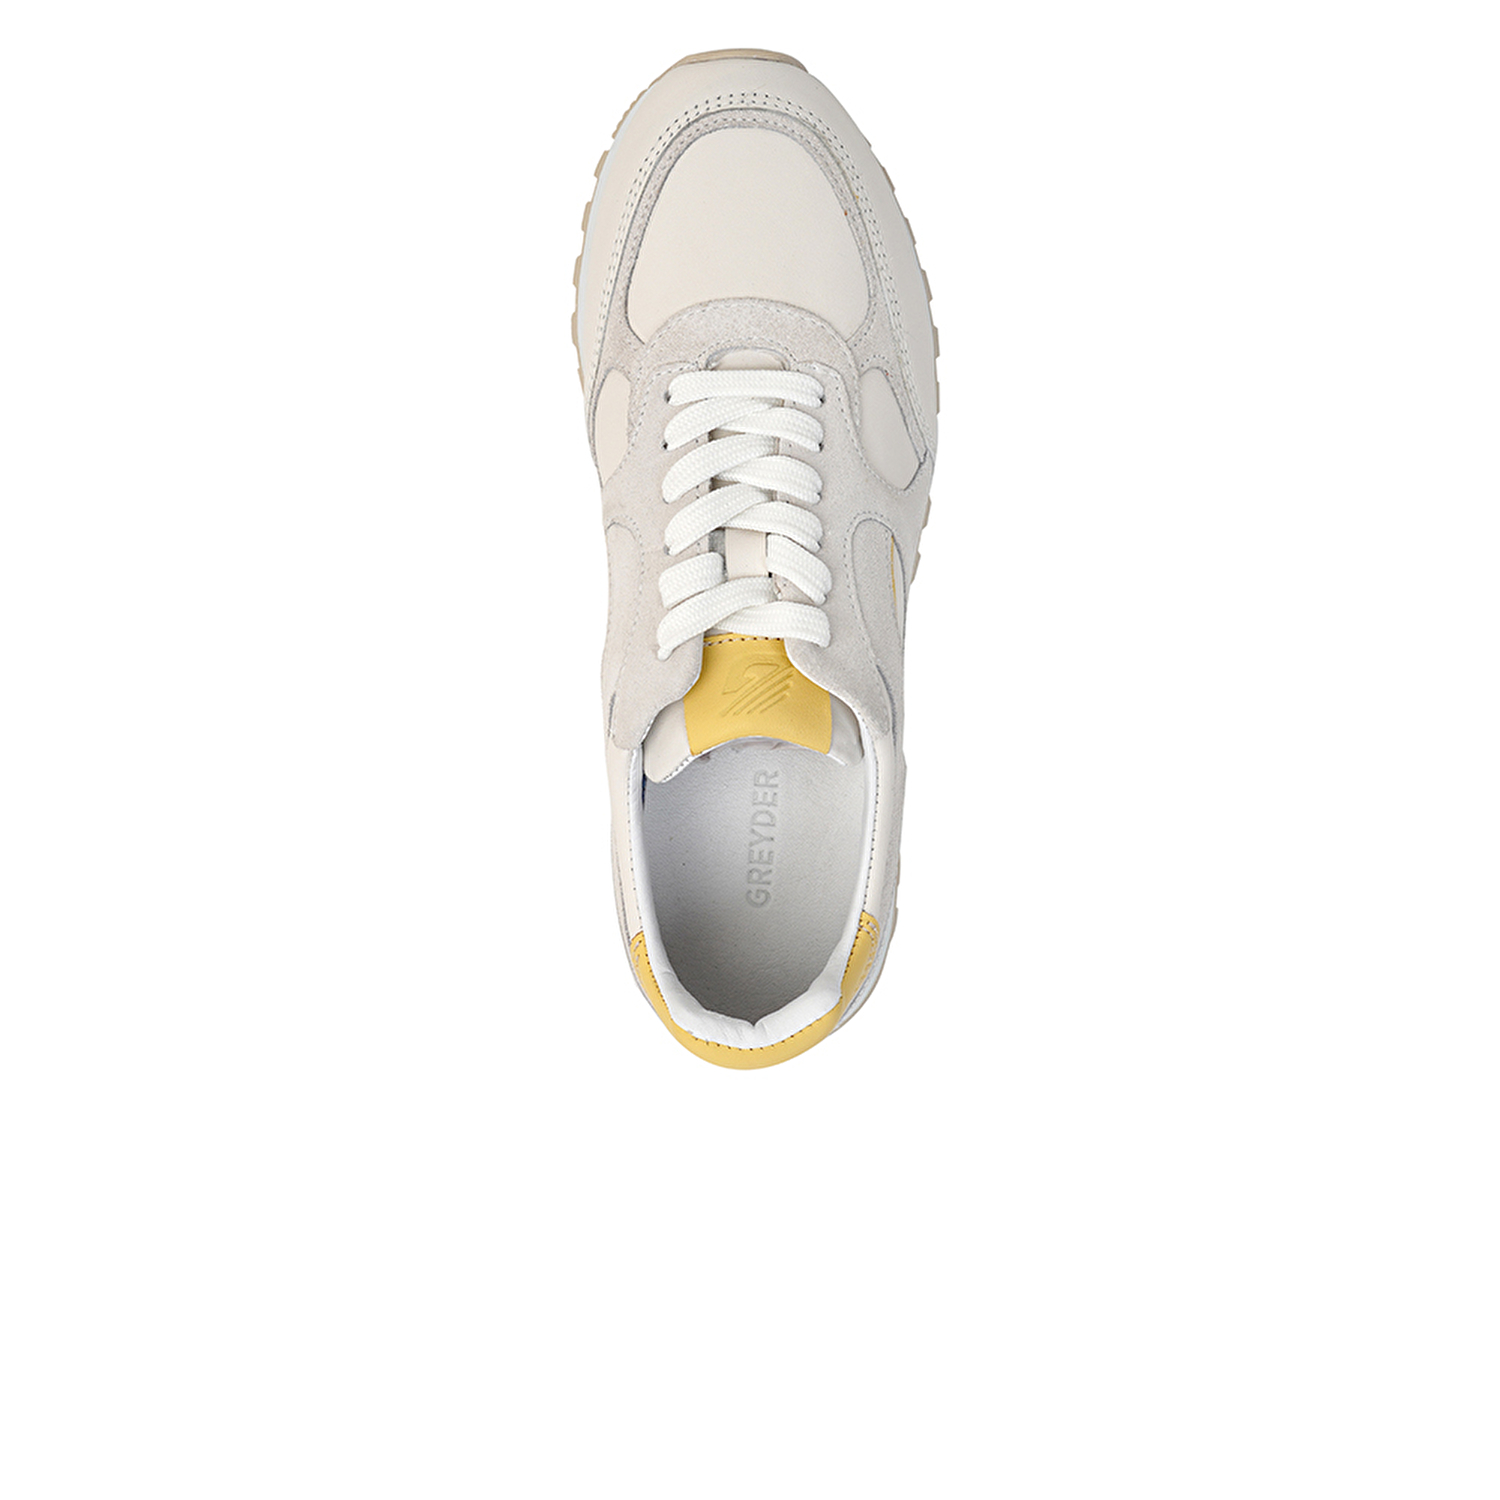 Kadın Kırık Beyaz Sarı Hakiki Deri Spor Ayakkabı 3Y2SA32320-3